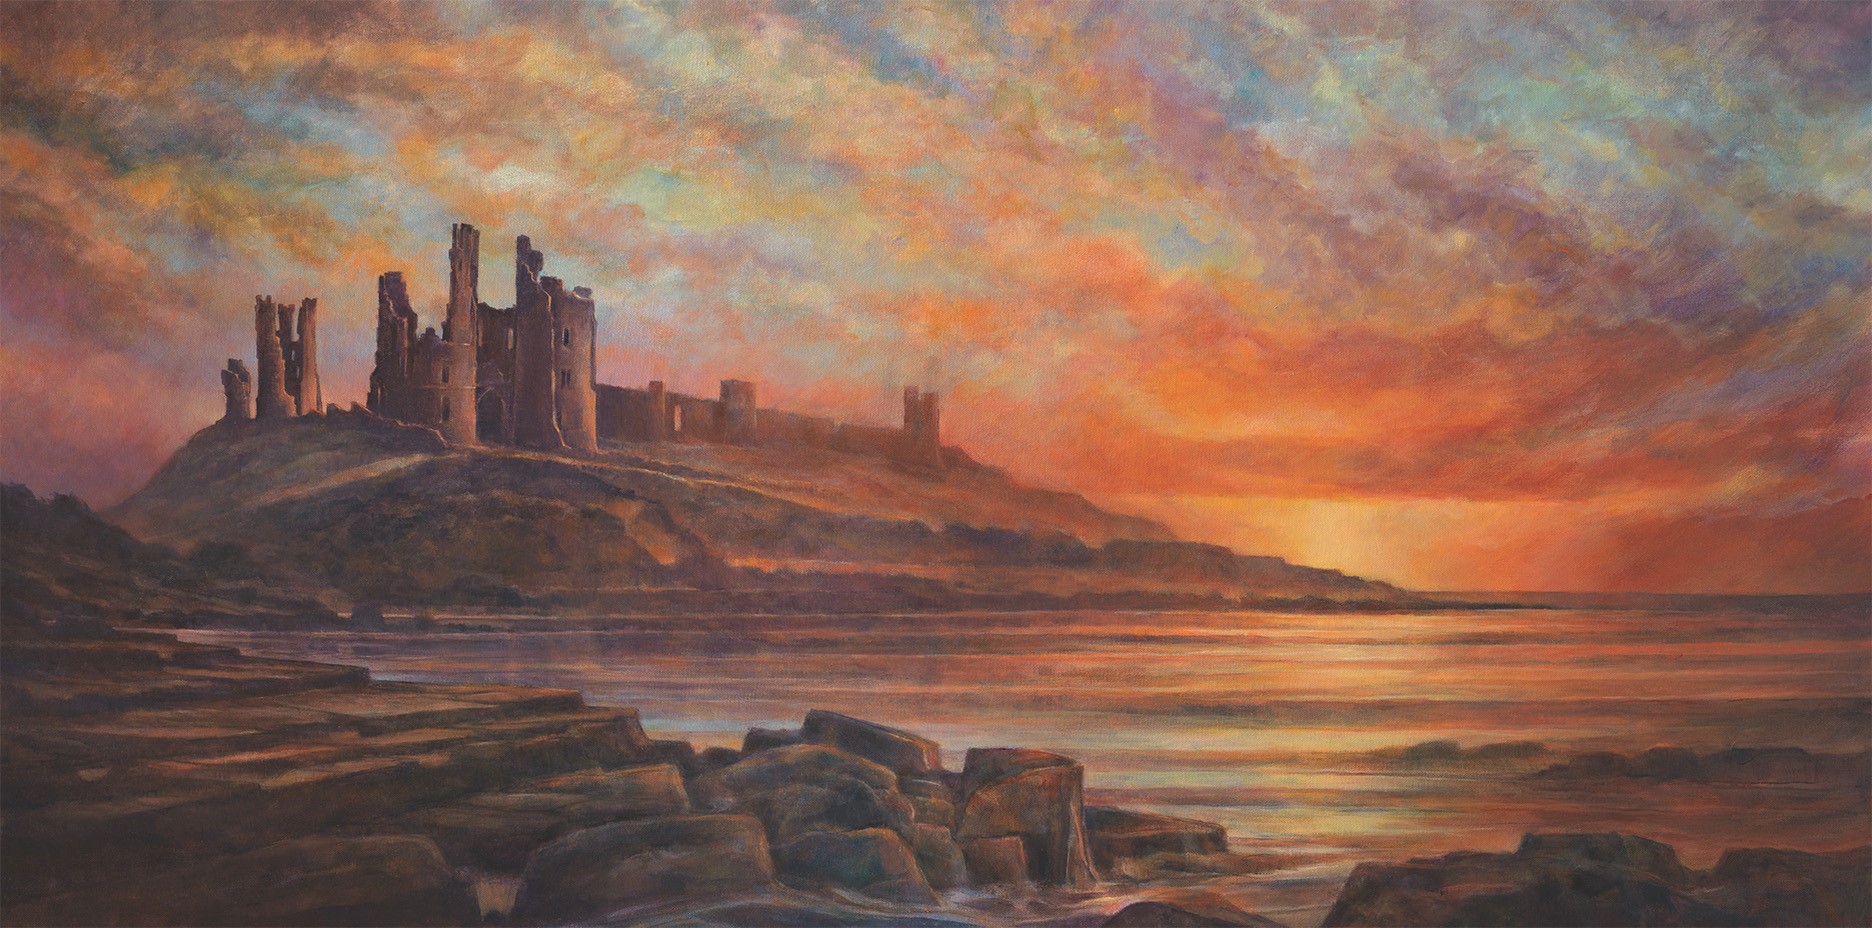 Ölgemälde von Dunstanburgh Castle mit dem Titel "Dunstanburgh Dawn".